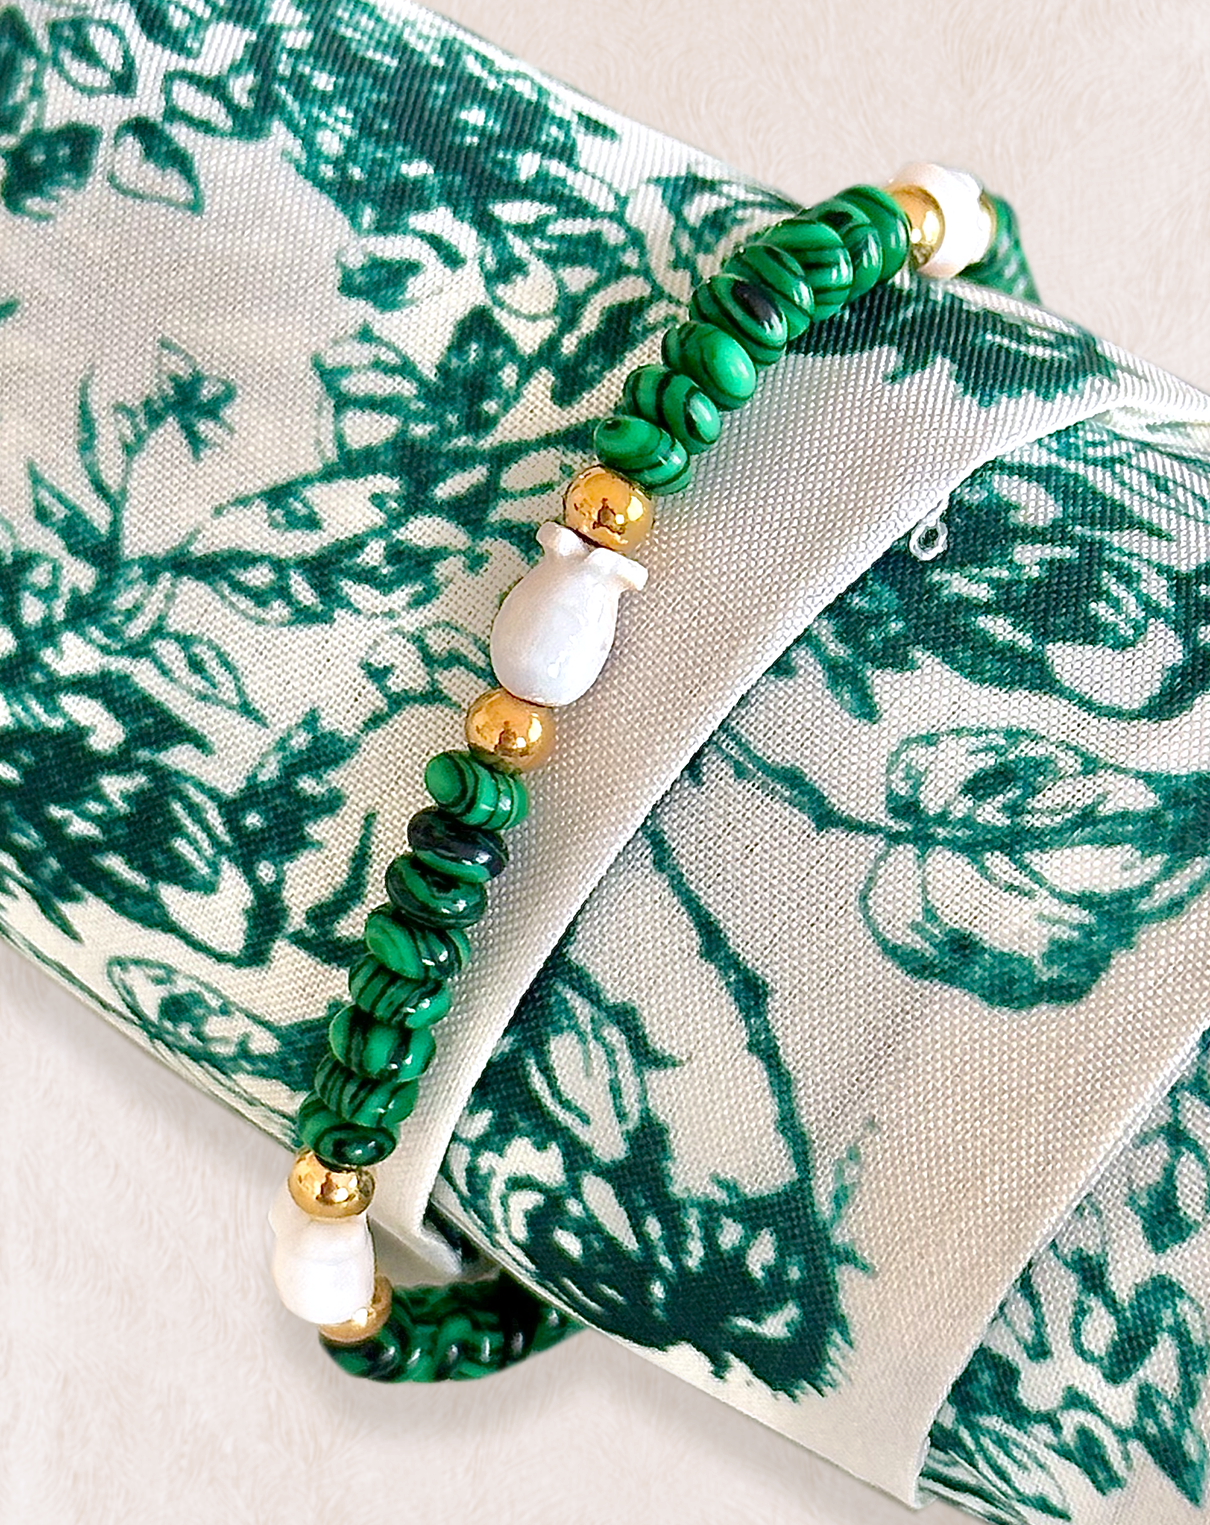 Bracelet de perles vertes, blanches et dorées enroulé autours d'un tissu à motif